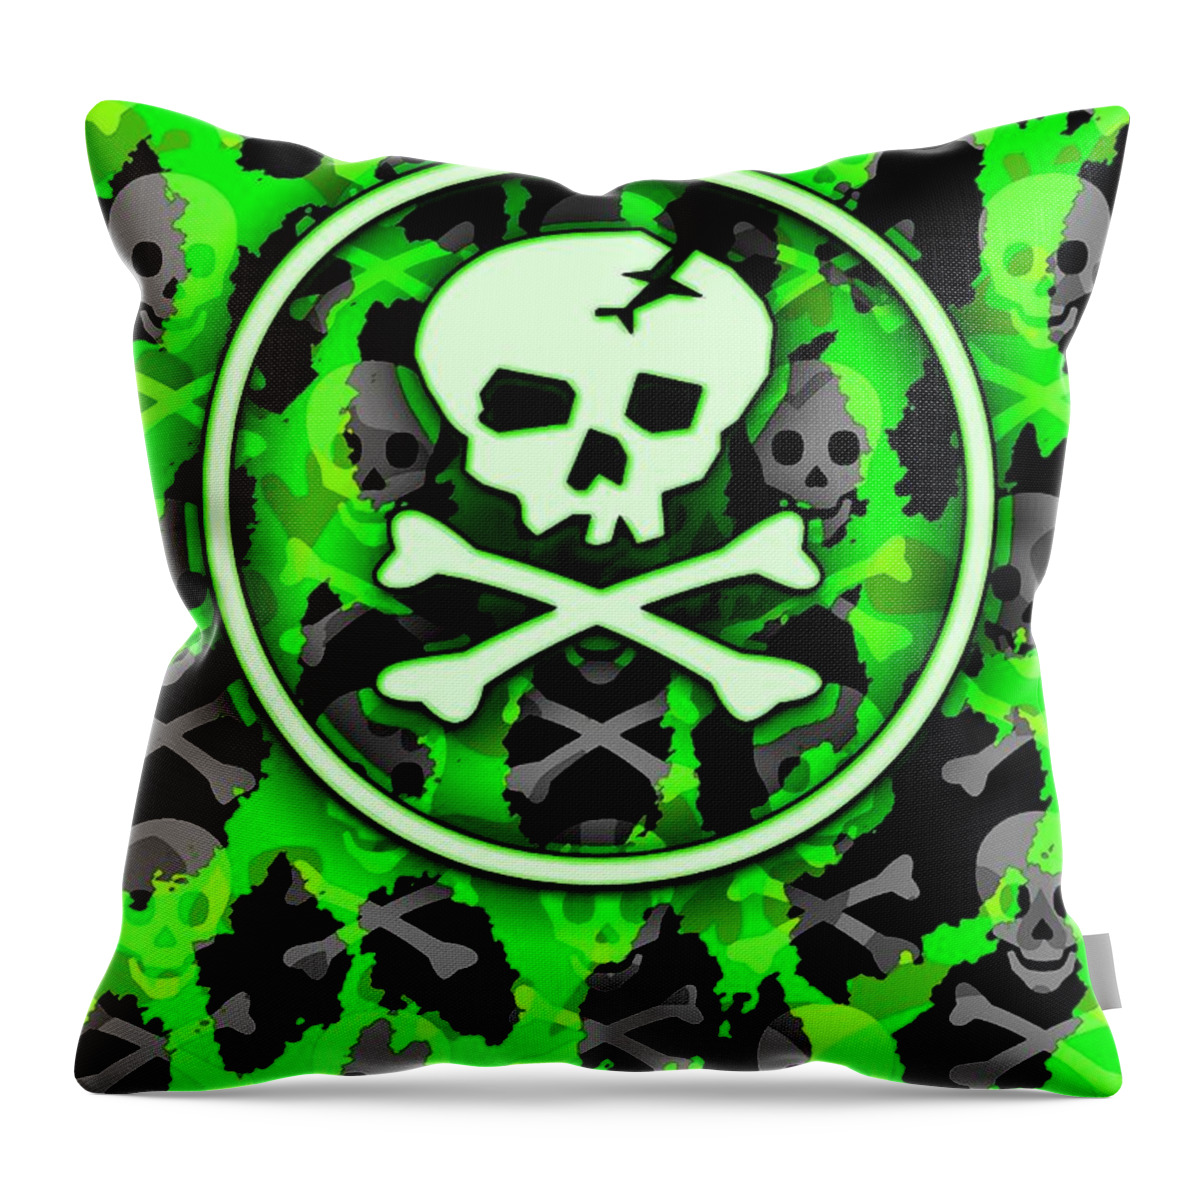 Green Throw Pillow featuring the digital art Green Deathrock Skull by Roseanne Jones